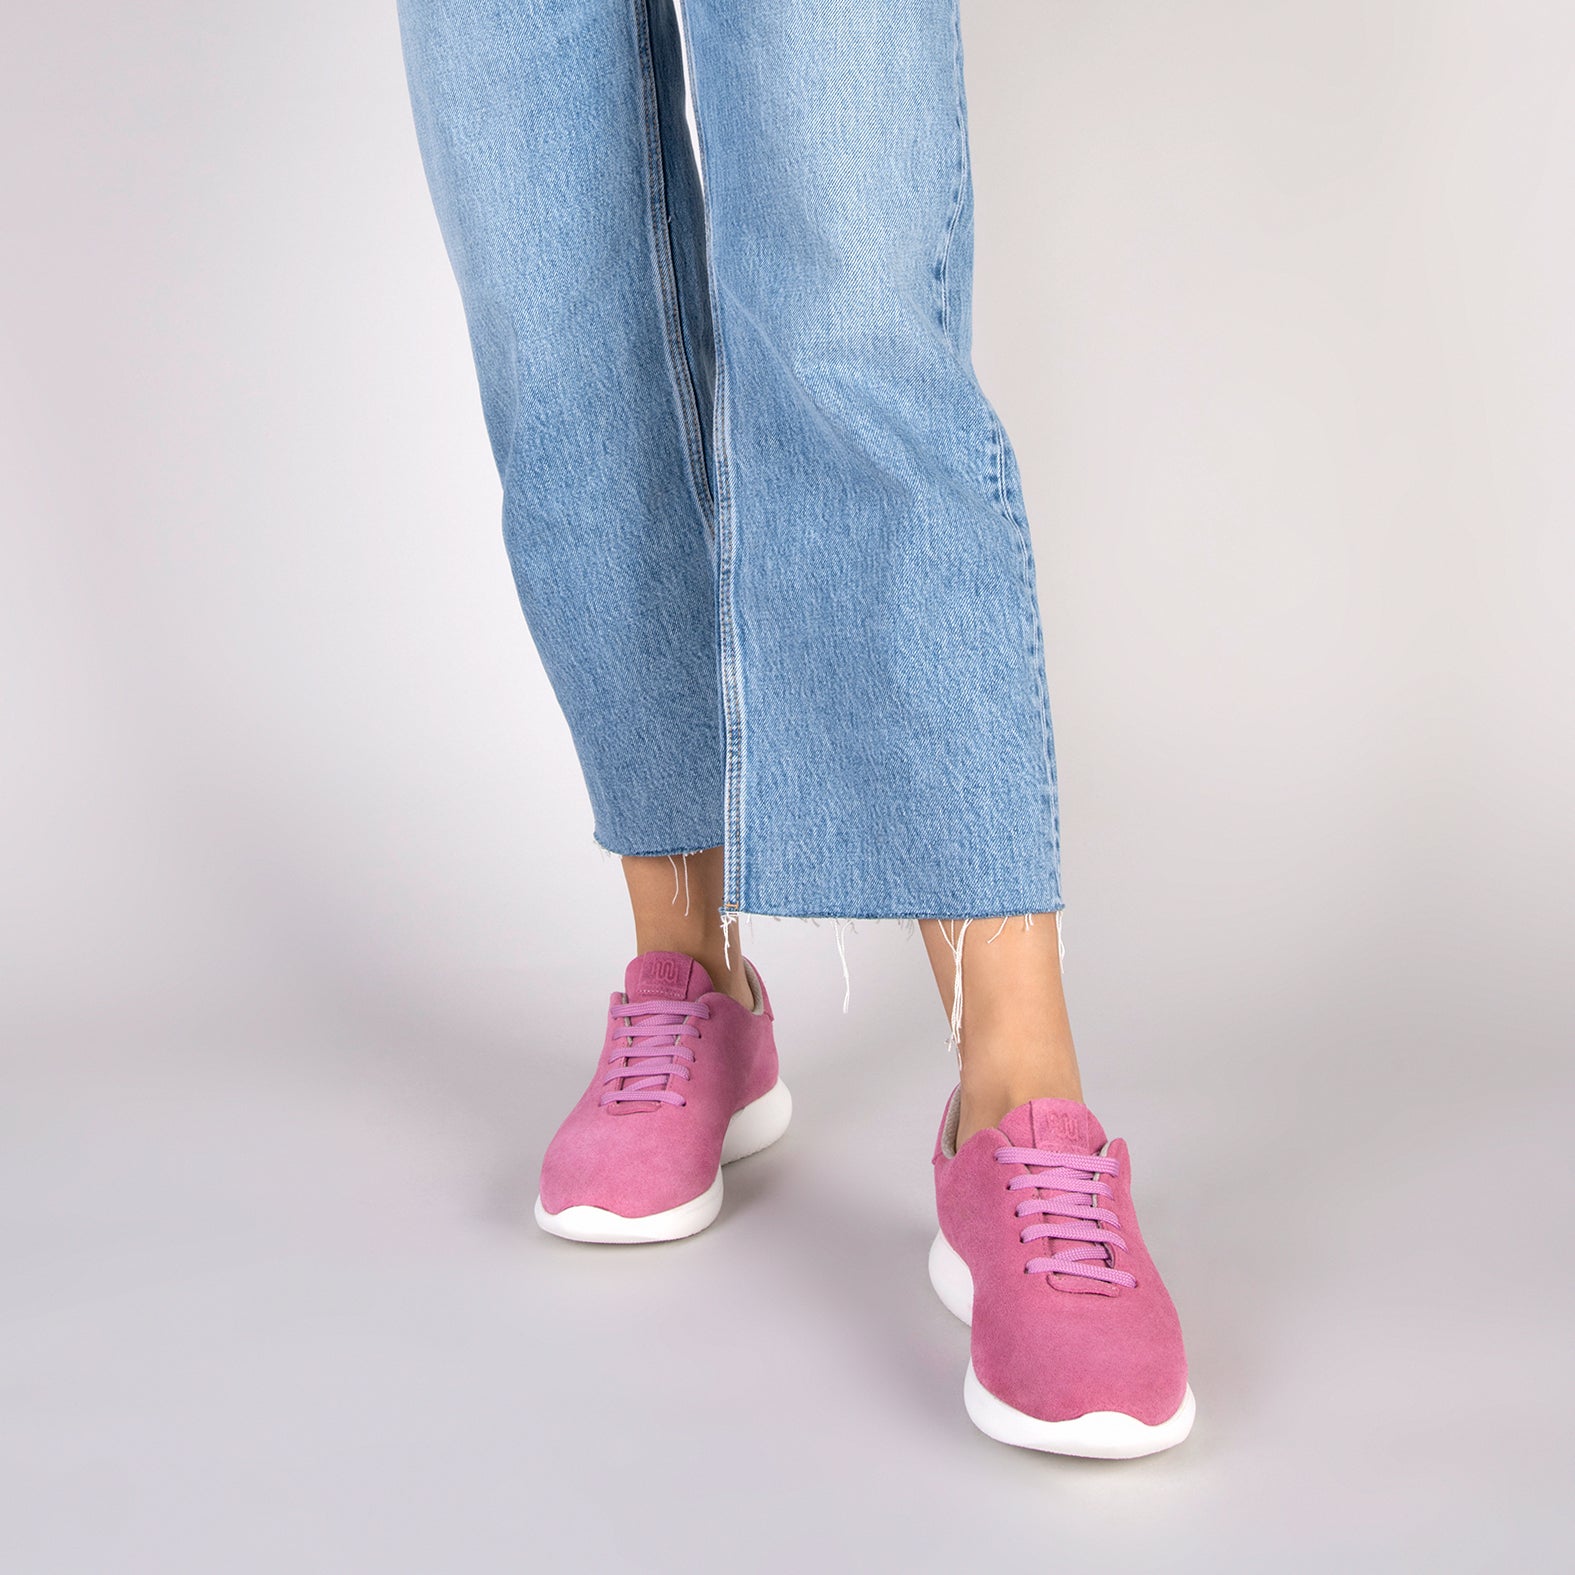 WALK – PINK comfortable women sneakers